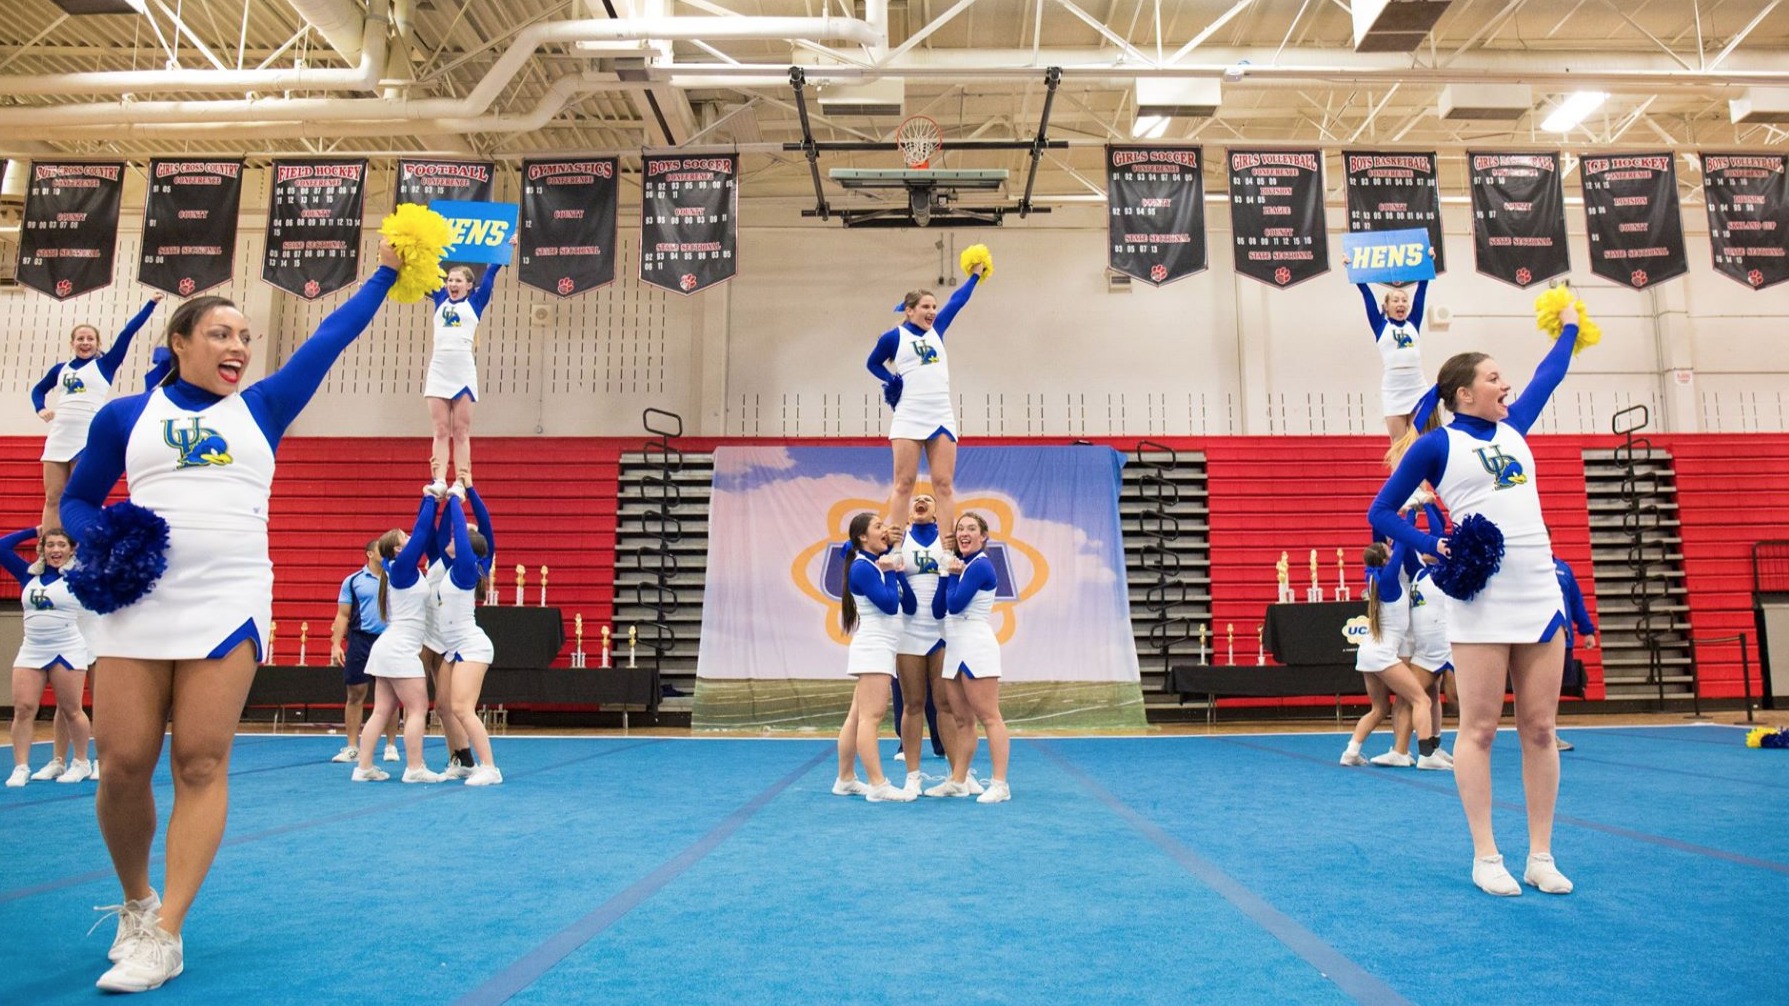 University of Delaware Cheer Team | MNJSports | Flickr